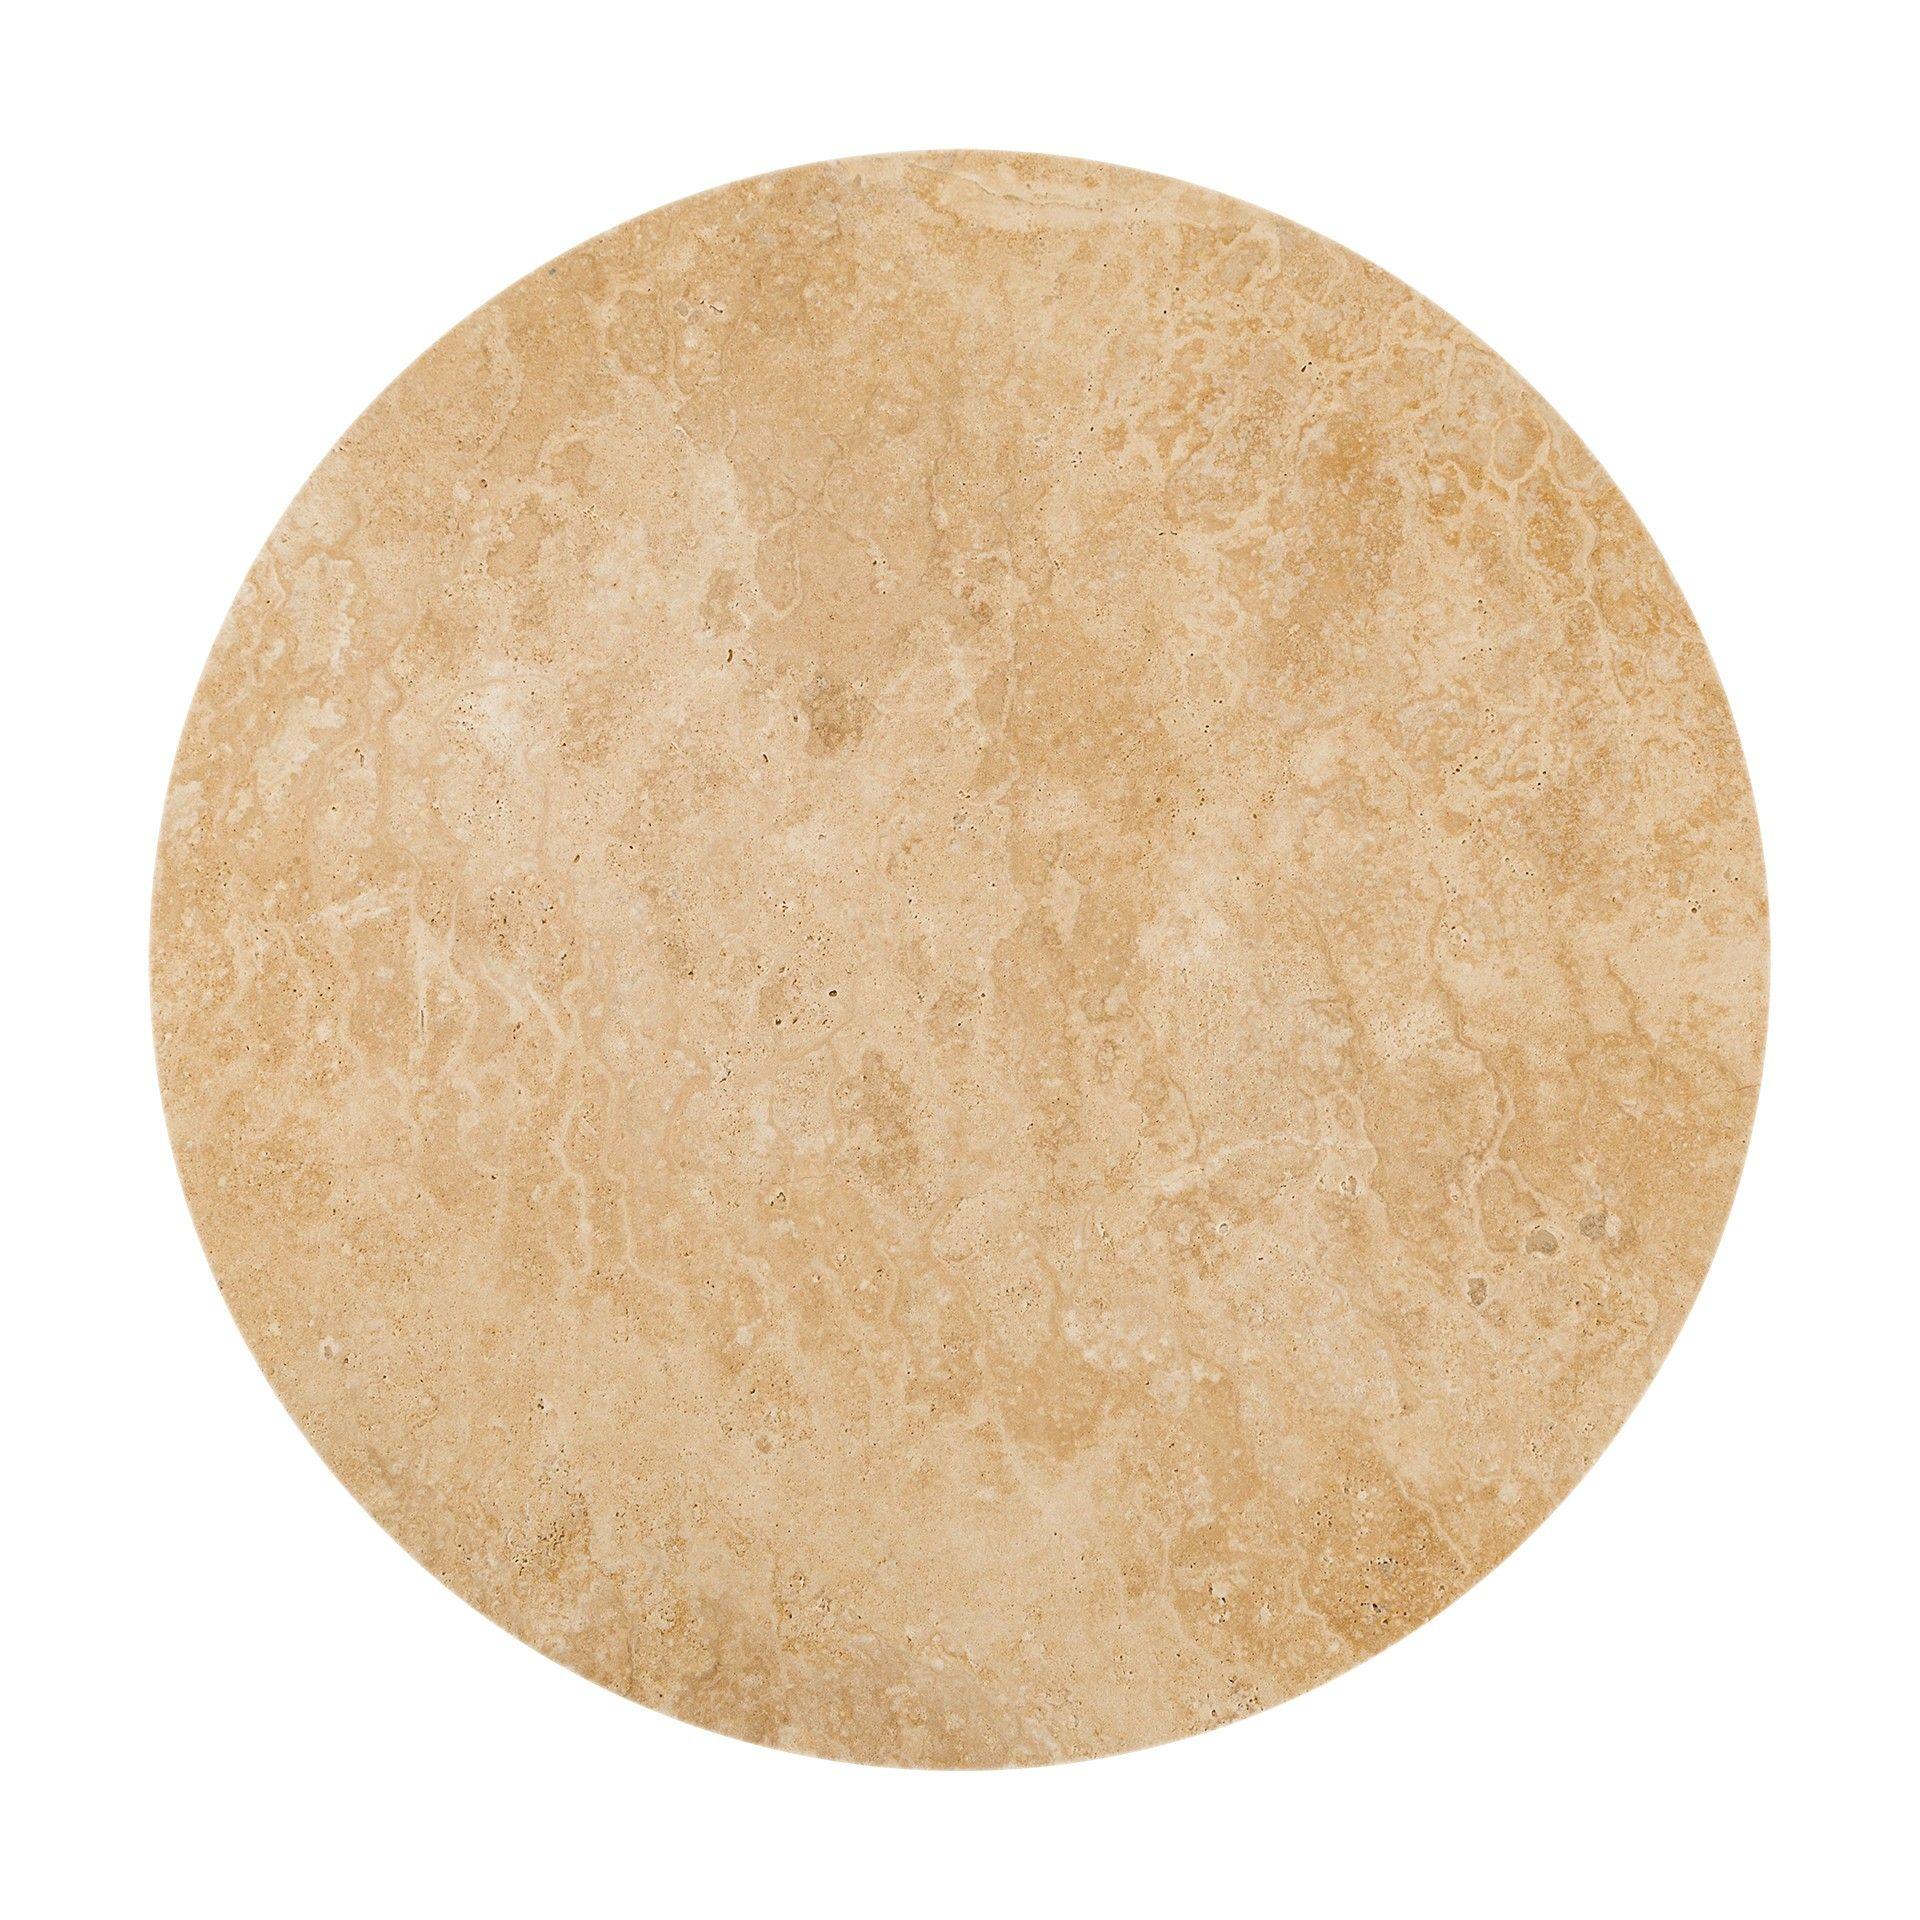 Der schöne runde Couchtisch Travertino aus Marmor ist von dem bekannten rotierenden Objekt Lazy Susan inspiriert. Dieser Couchtisch vermittelt durch seine kreisförmige Form und die daraus hervorstechenden Flächen die Idee einer Drehbewegung. Dieser